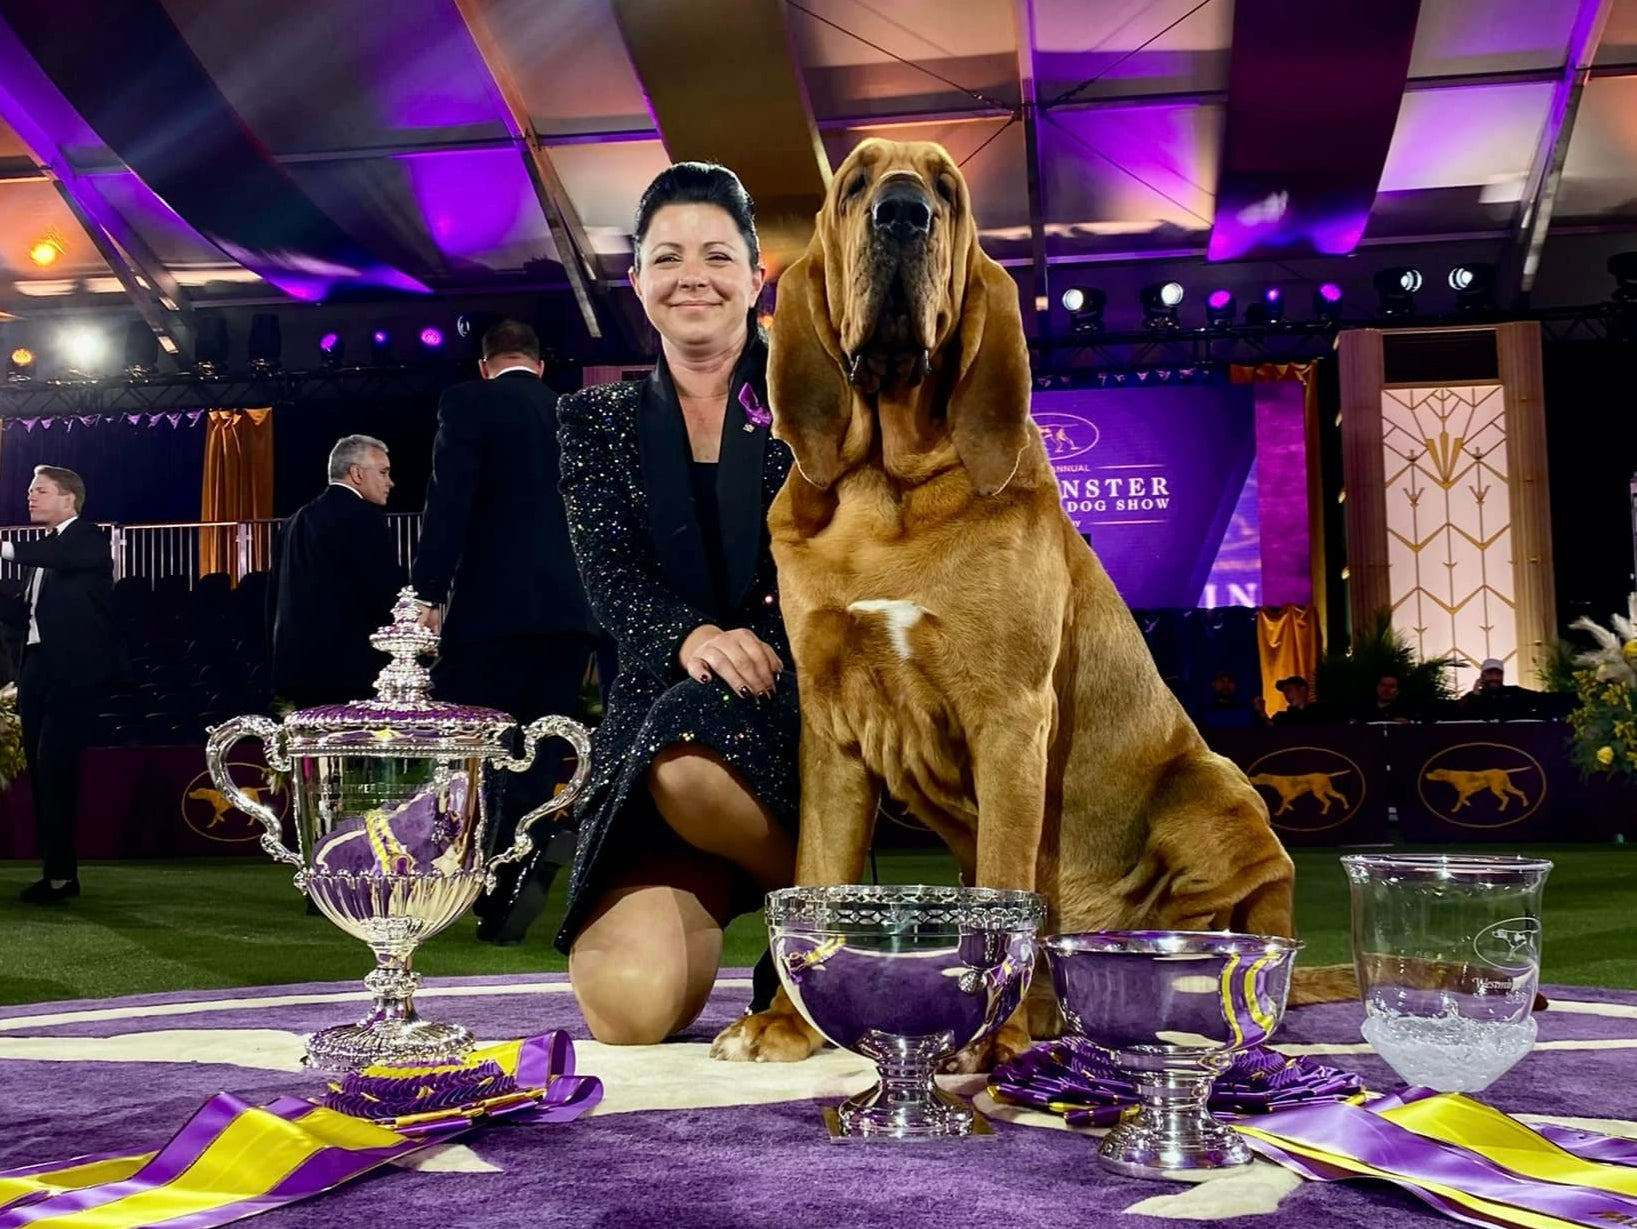 Westminster Dog Show - Prestigious Dog Competition